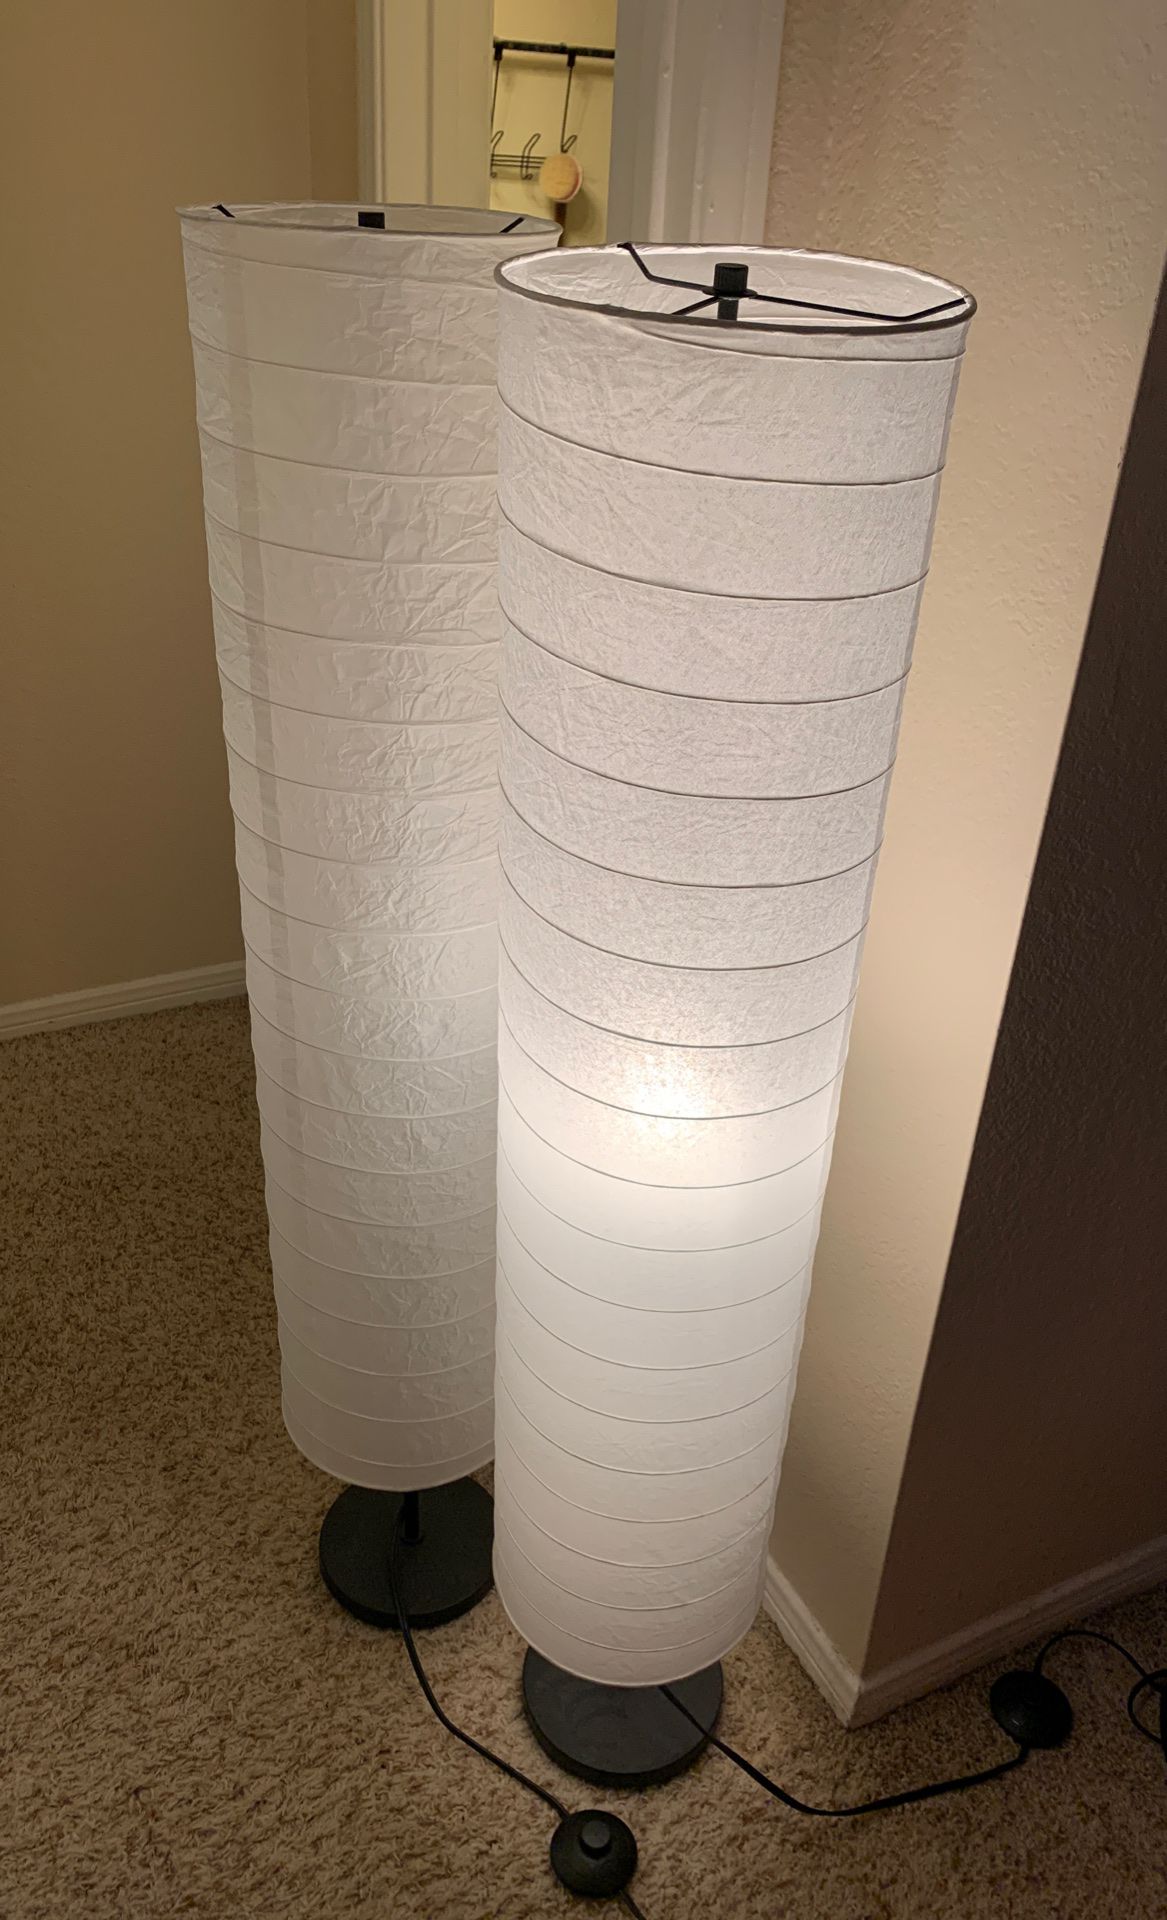 2x IKEA STANDING FLOOR PAPER LAMPS